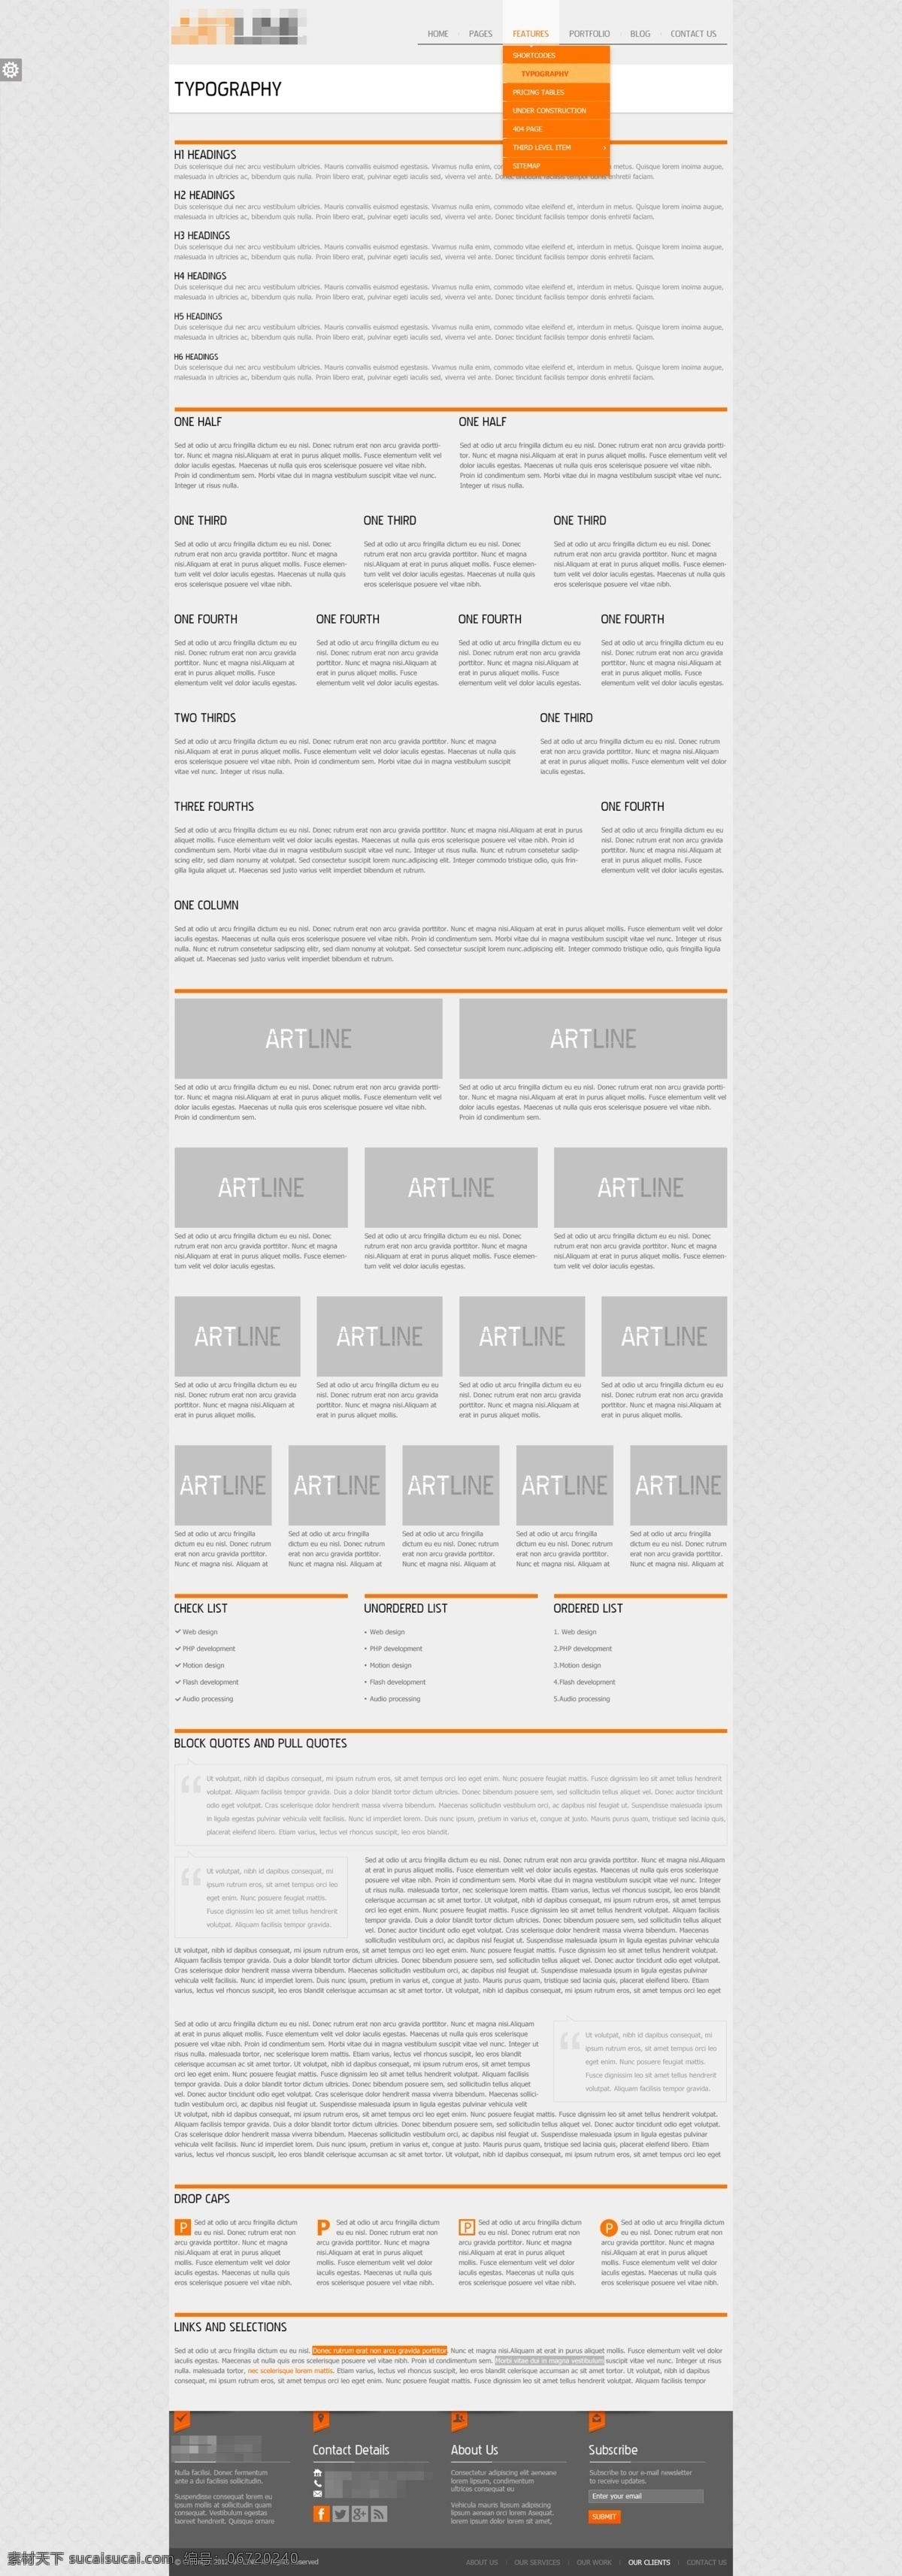 创意 科技 商务 抽象 印刷 网站 字体 排版 抽象创意 抽象设计 抽象网站 创意设计 创意网站 科技网站 科技网站首页 印刷公司 印刷网站 字体设计